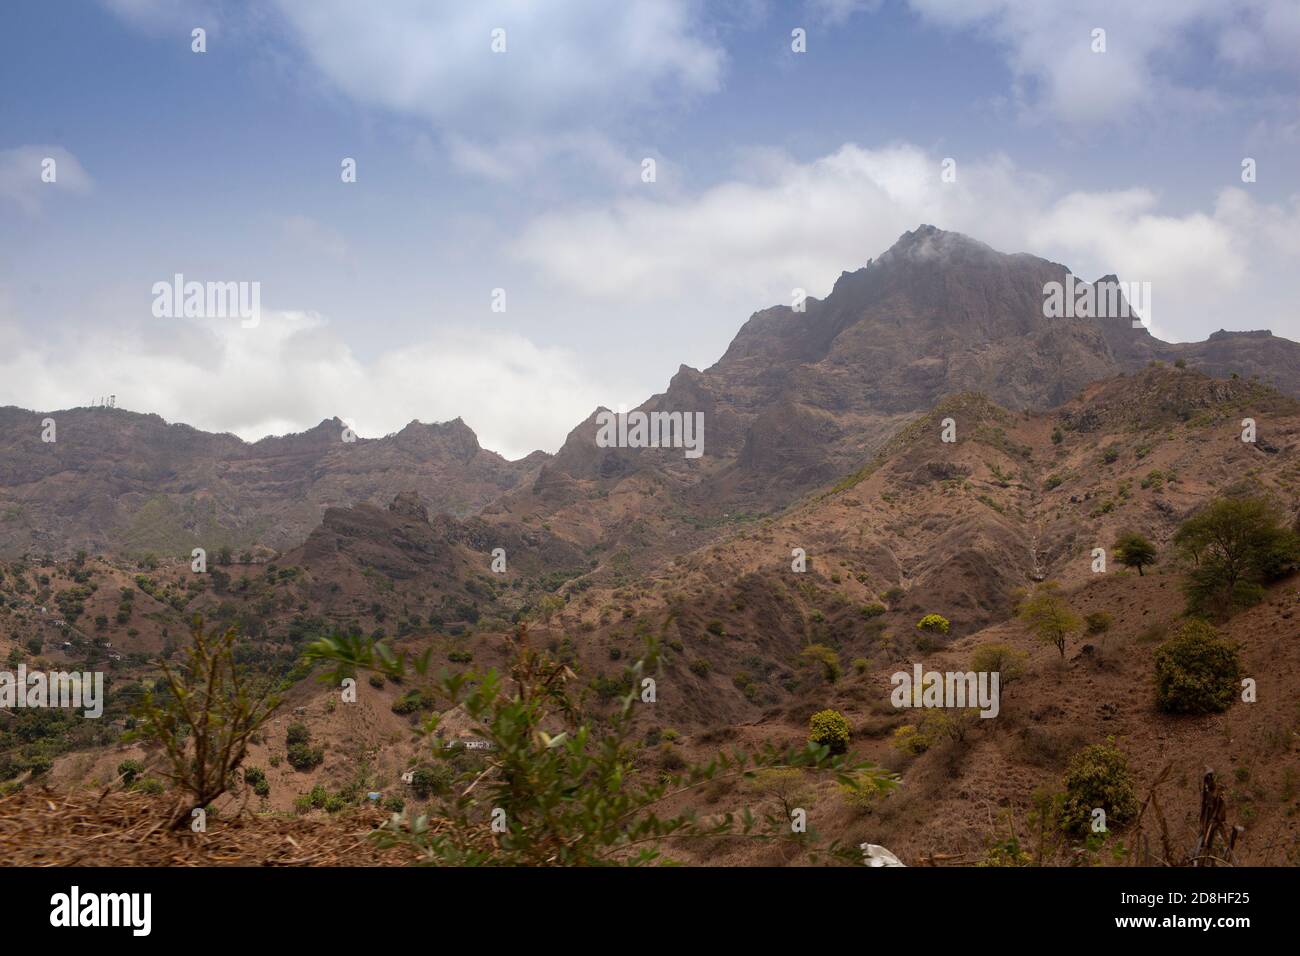 La isla de Santiago, en el archipiélago de Cabo Verde, tiene formaciones de tierra escarpadas y montañosas. Foto de stock